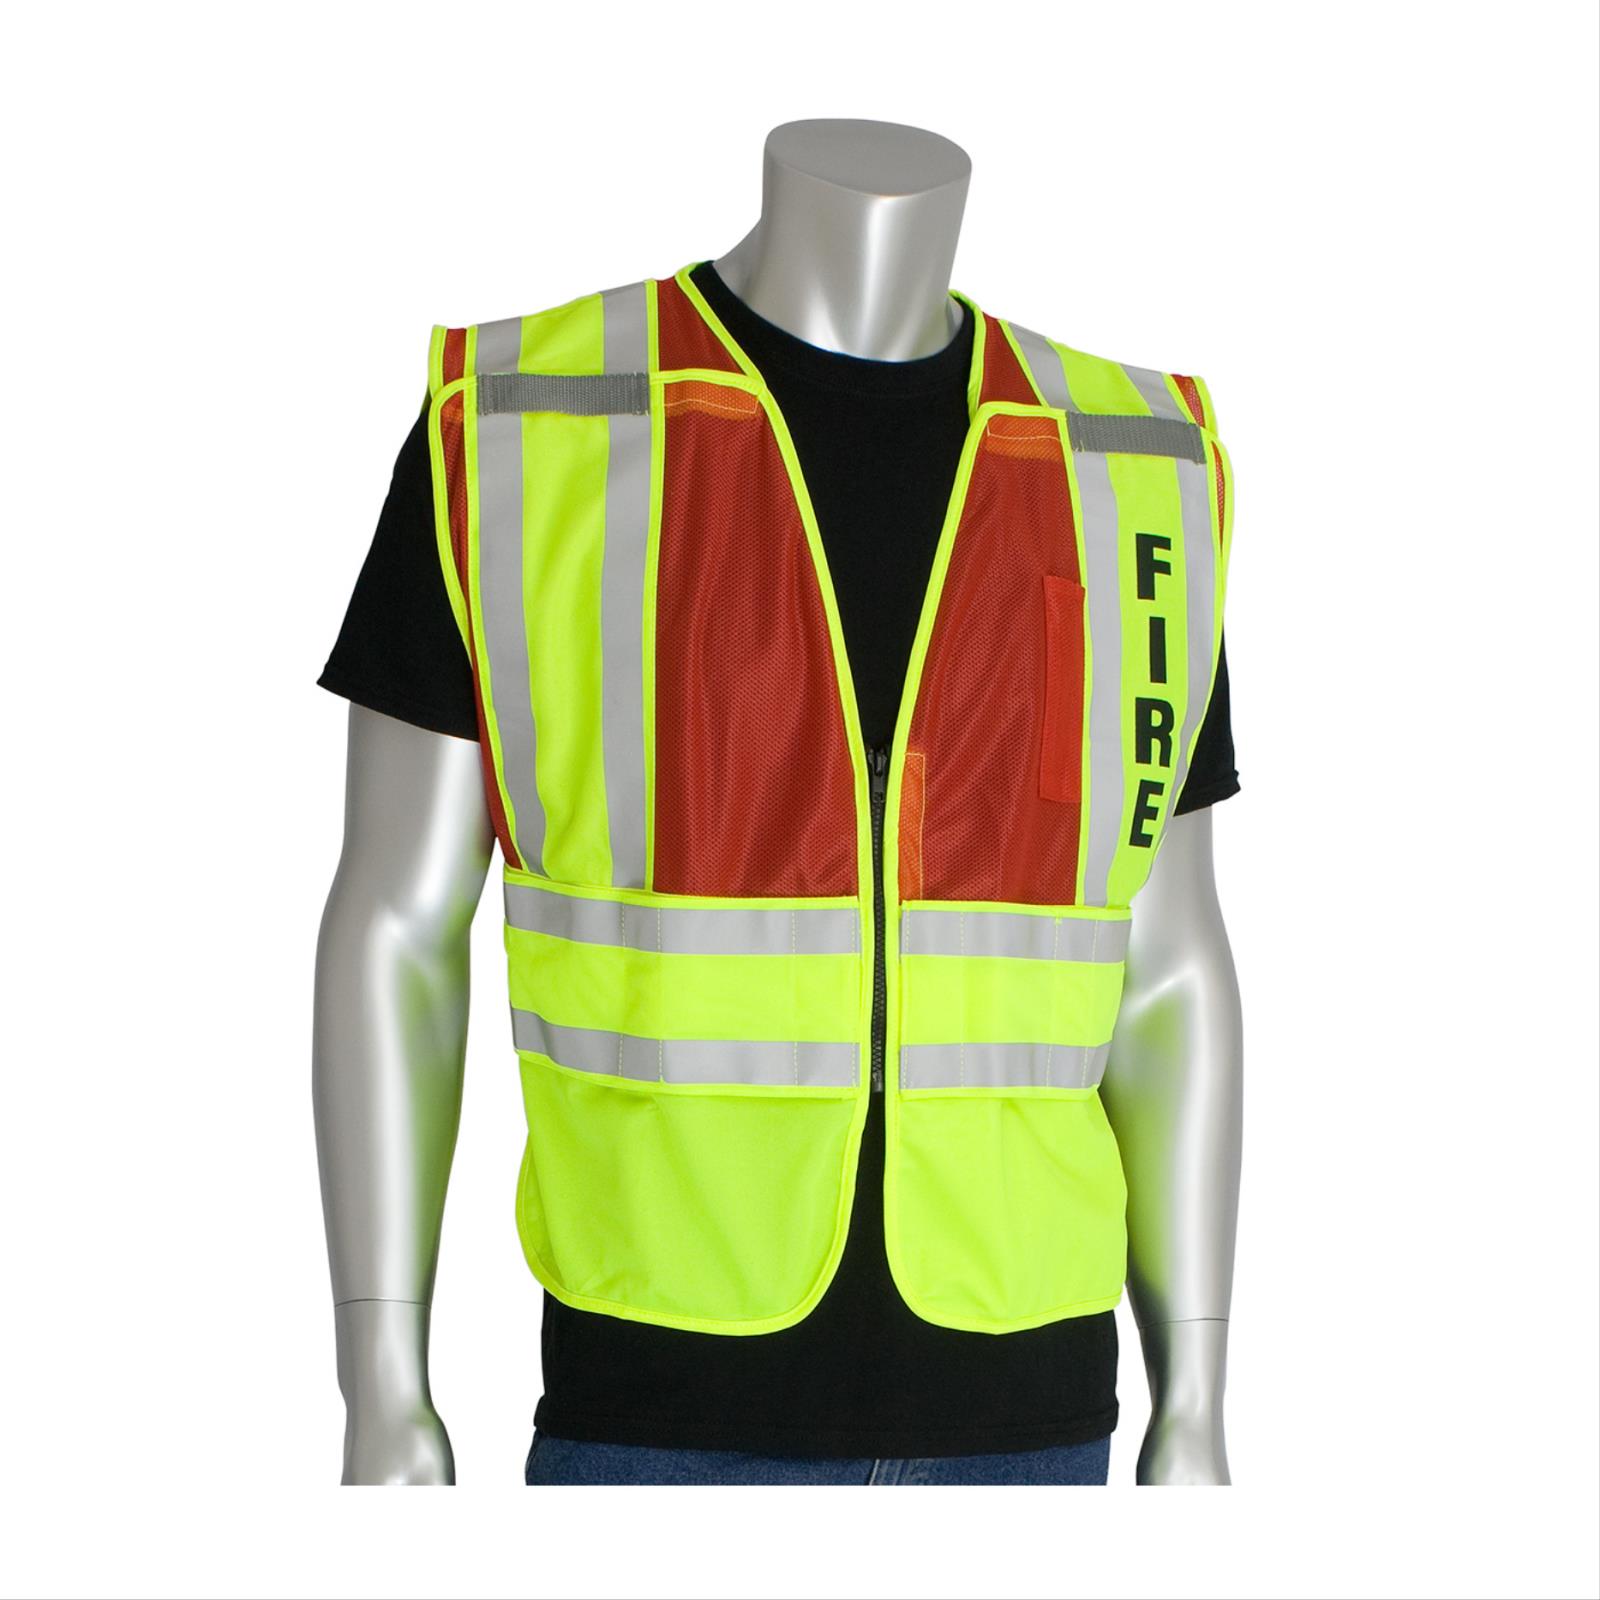 Public Safety Vest, Class 2 Type P